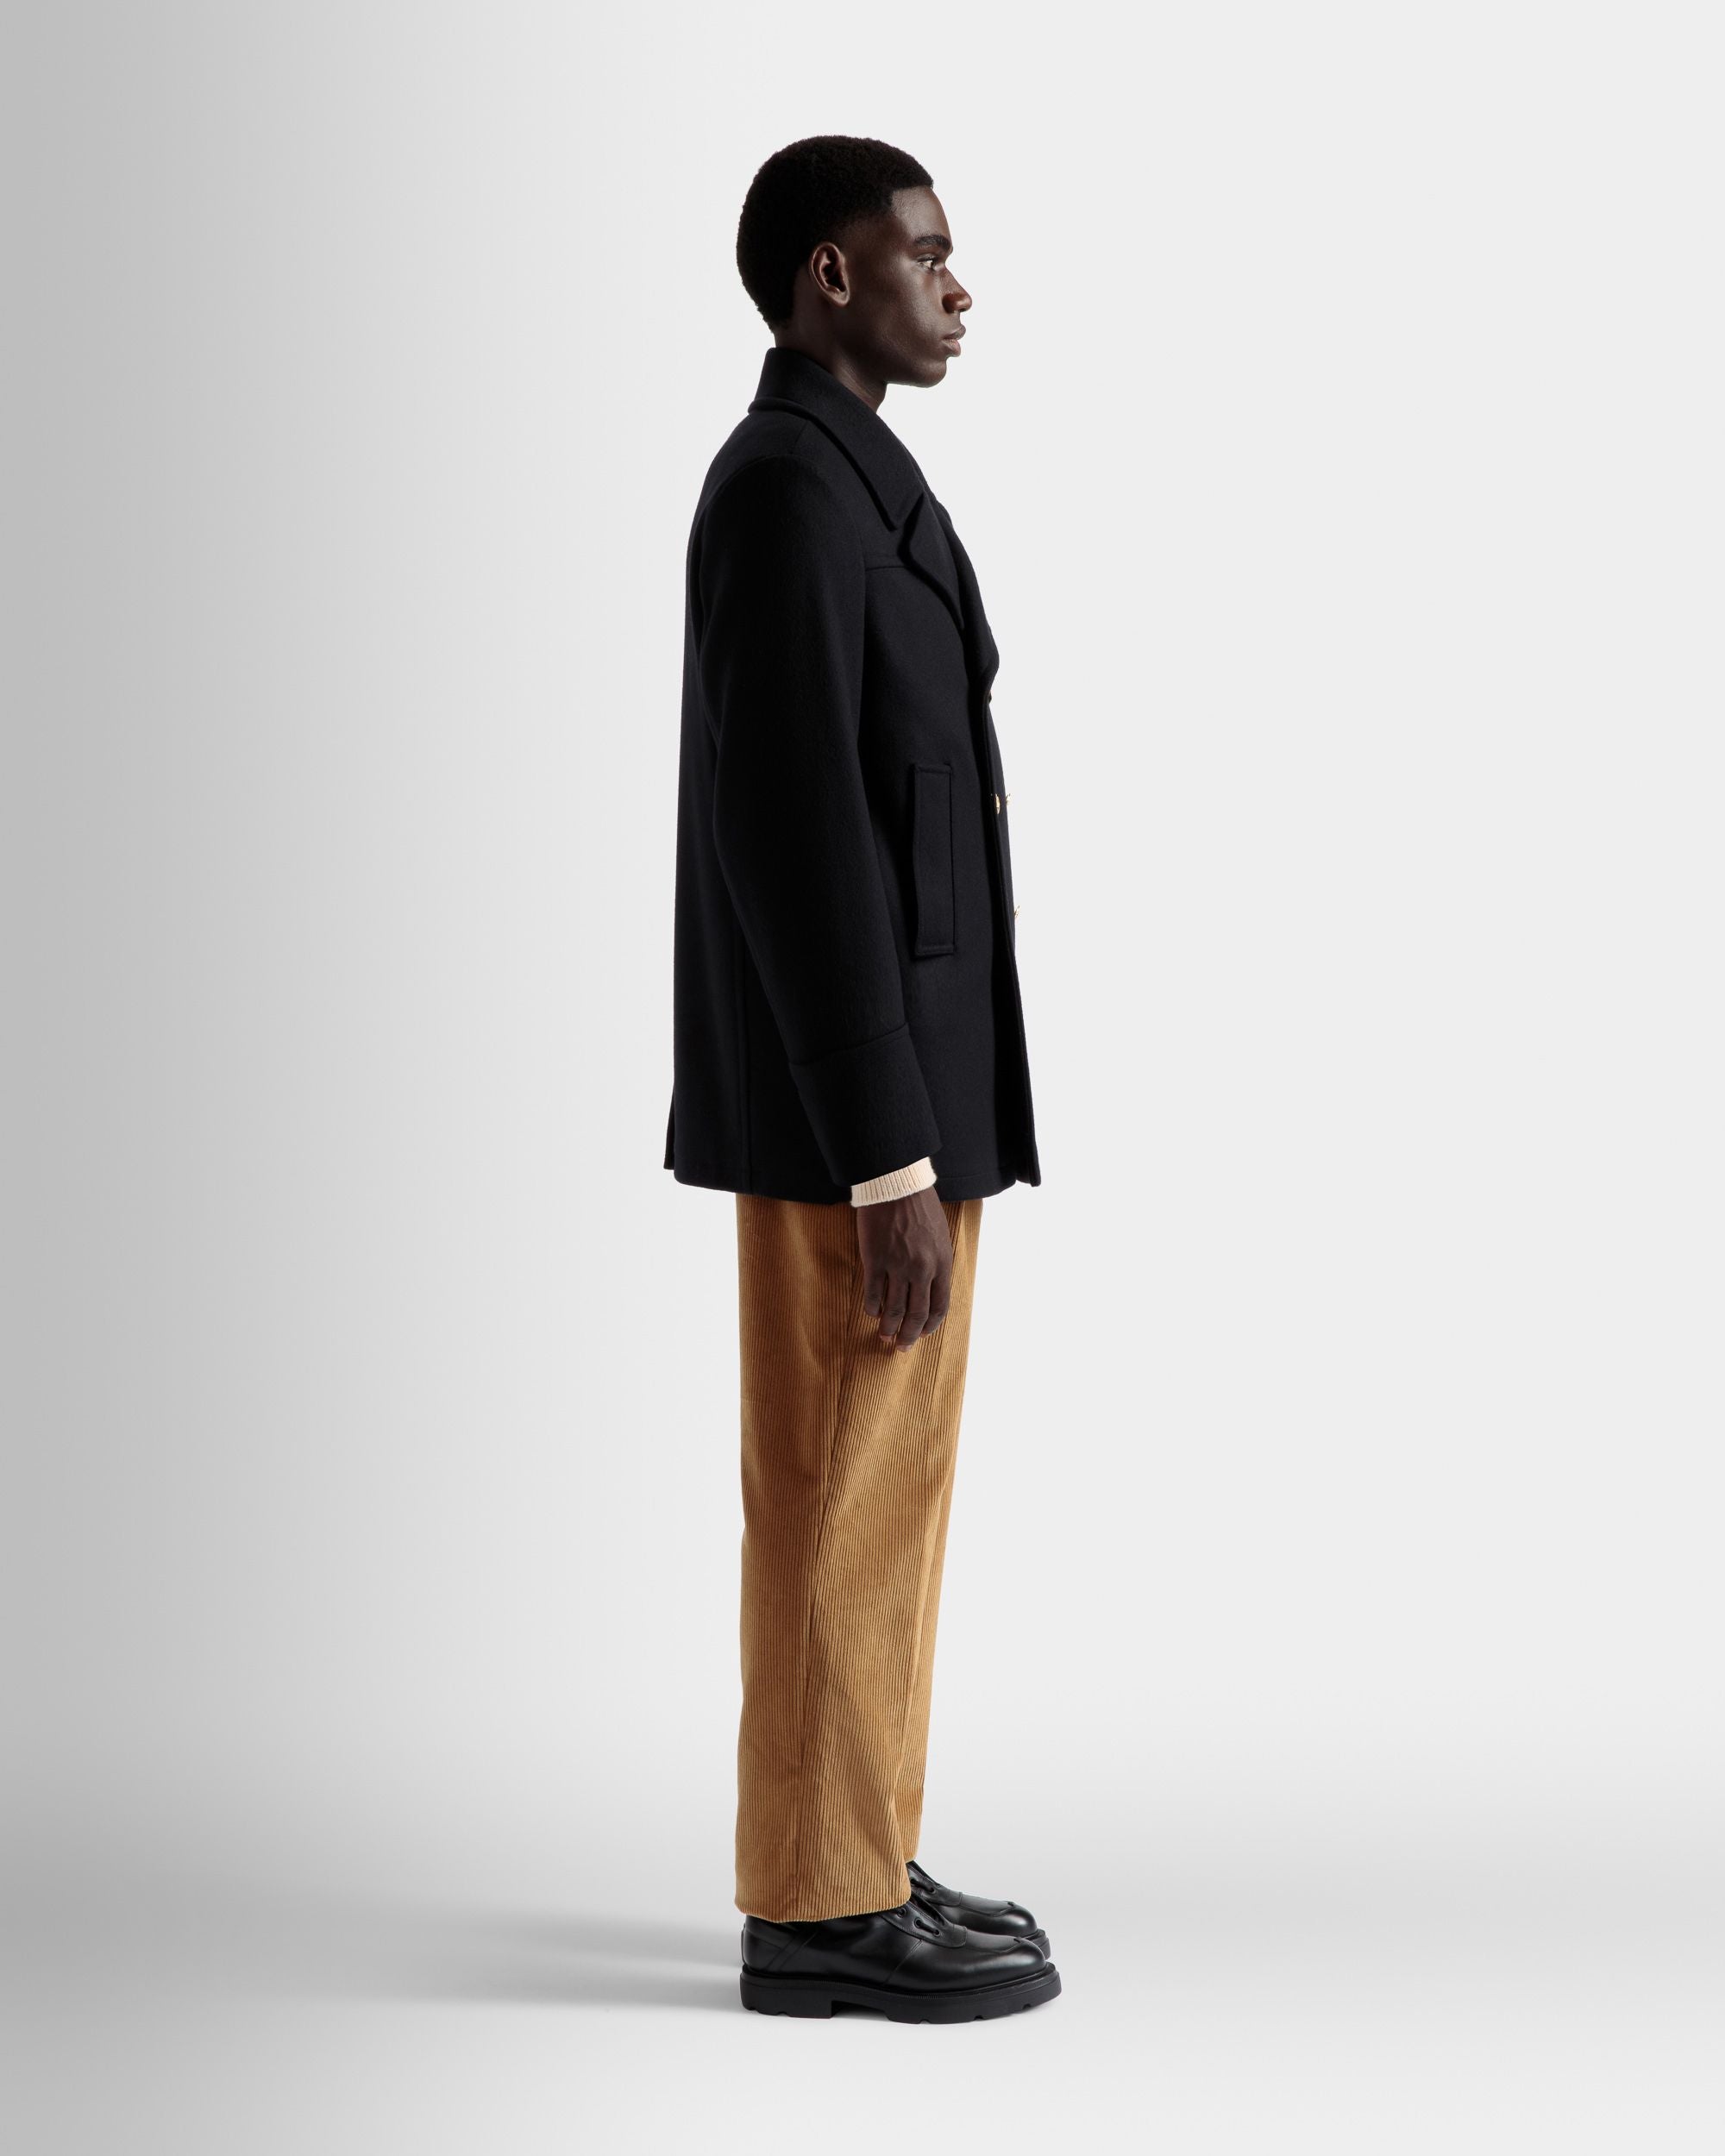 Zweireihiger Mantel | Jacken und Mäntel für Herren | Marineblaues Wollgemisch | Bally | Model getragen 3/4 Vorderseite